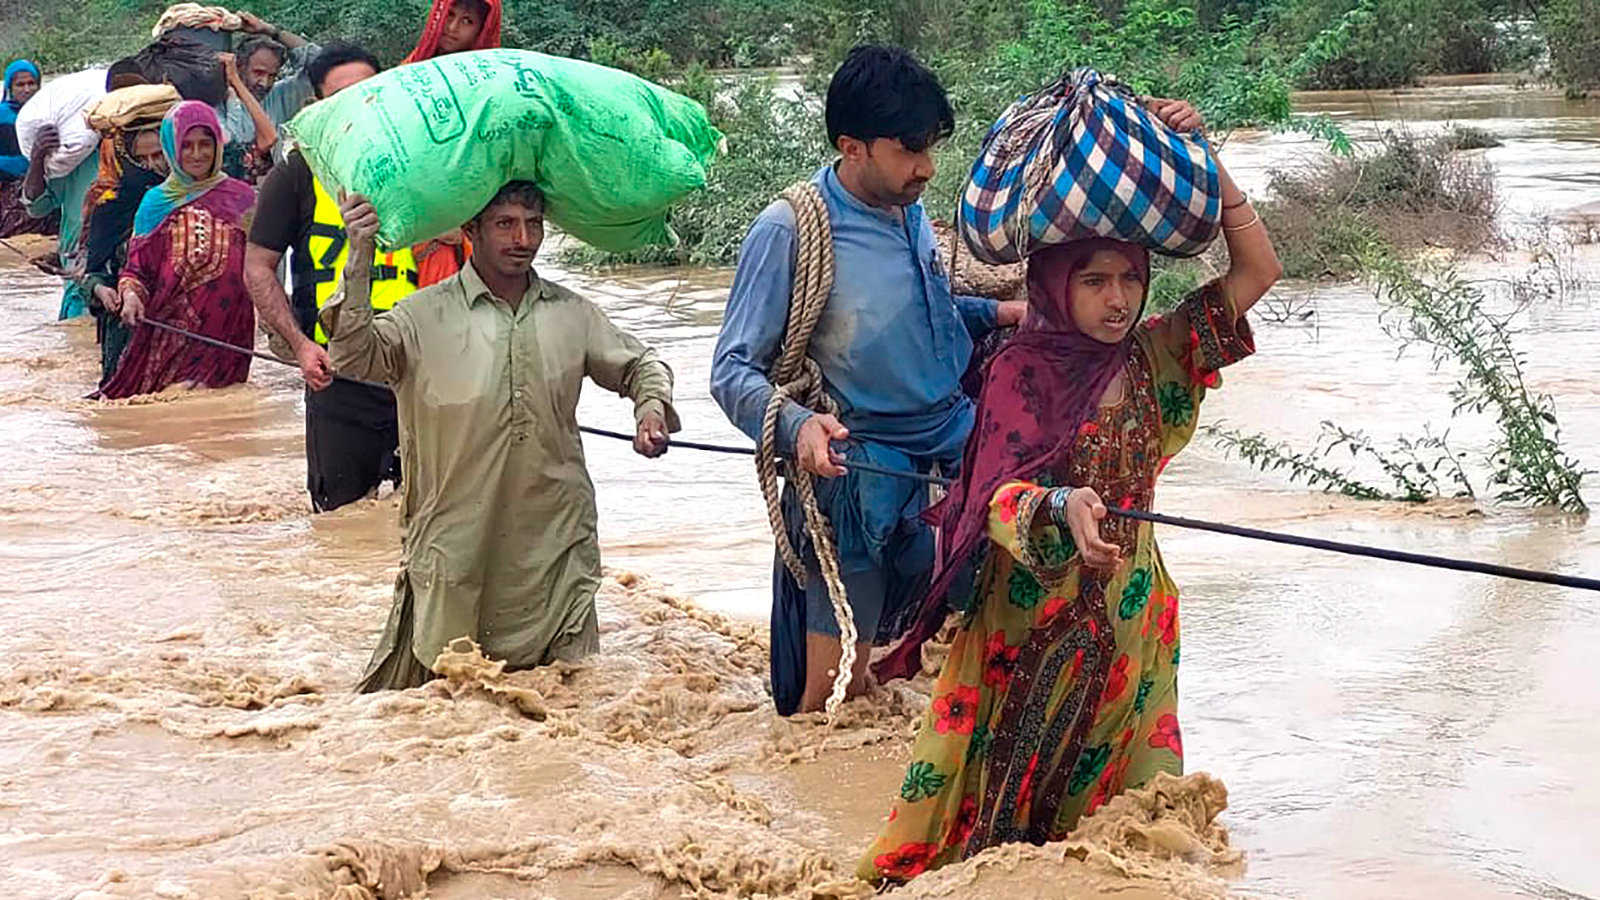 Ehrenamtliche Geistliche aus ganz Pakistan geben Assists, Medikamente, Essen und lebenswichtige Hilfsgüter an die Geschädigten der Überschwemmungen.